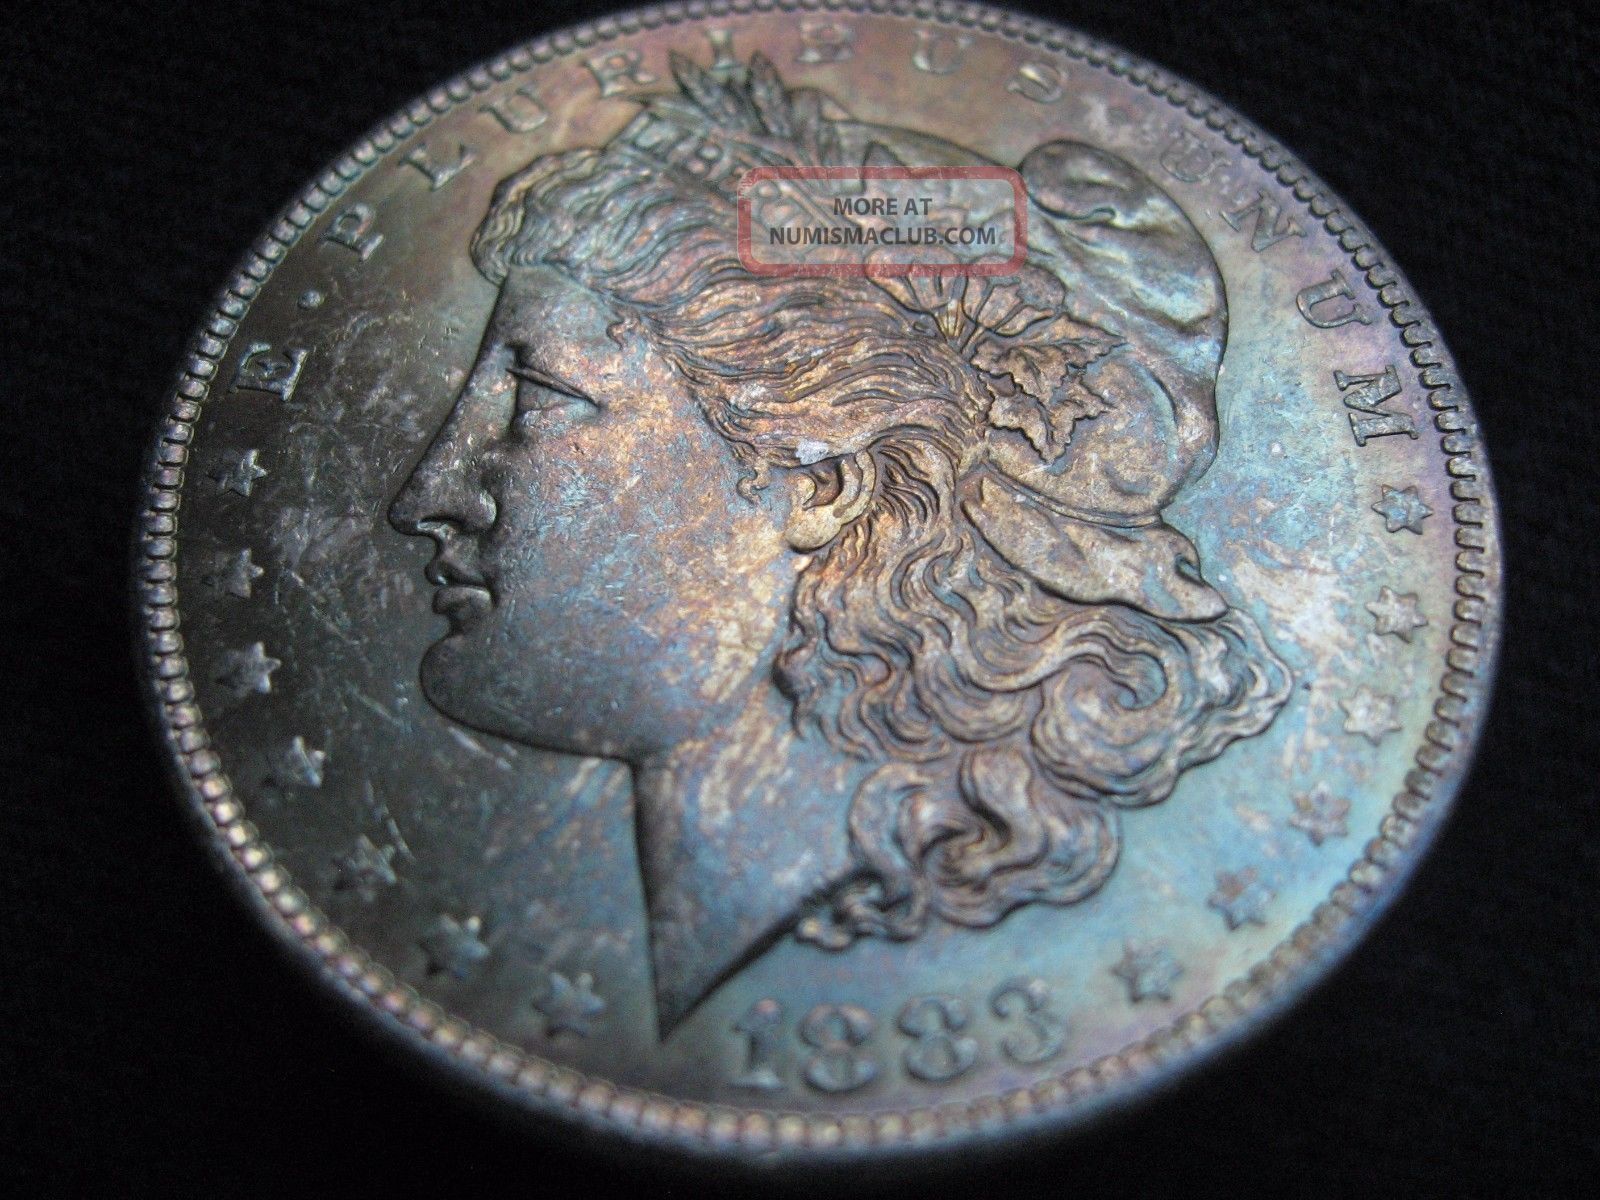 1883 O Morgan Silver Dollar - State/uncirculated - Toning